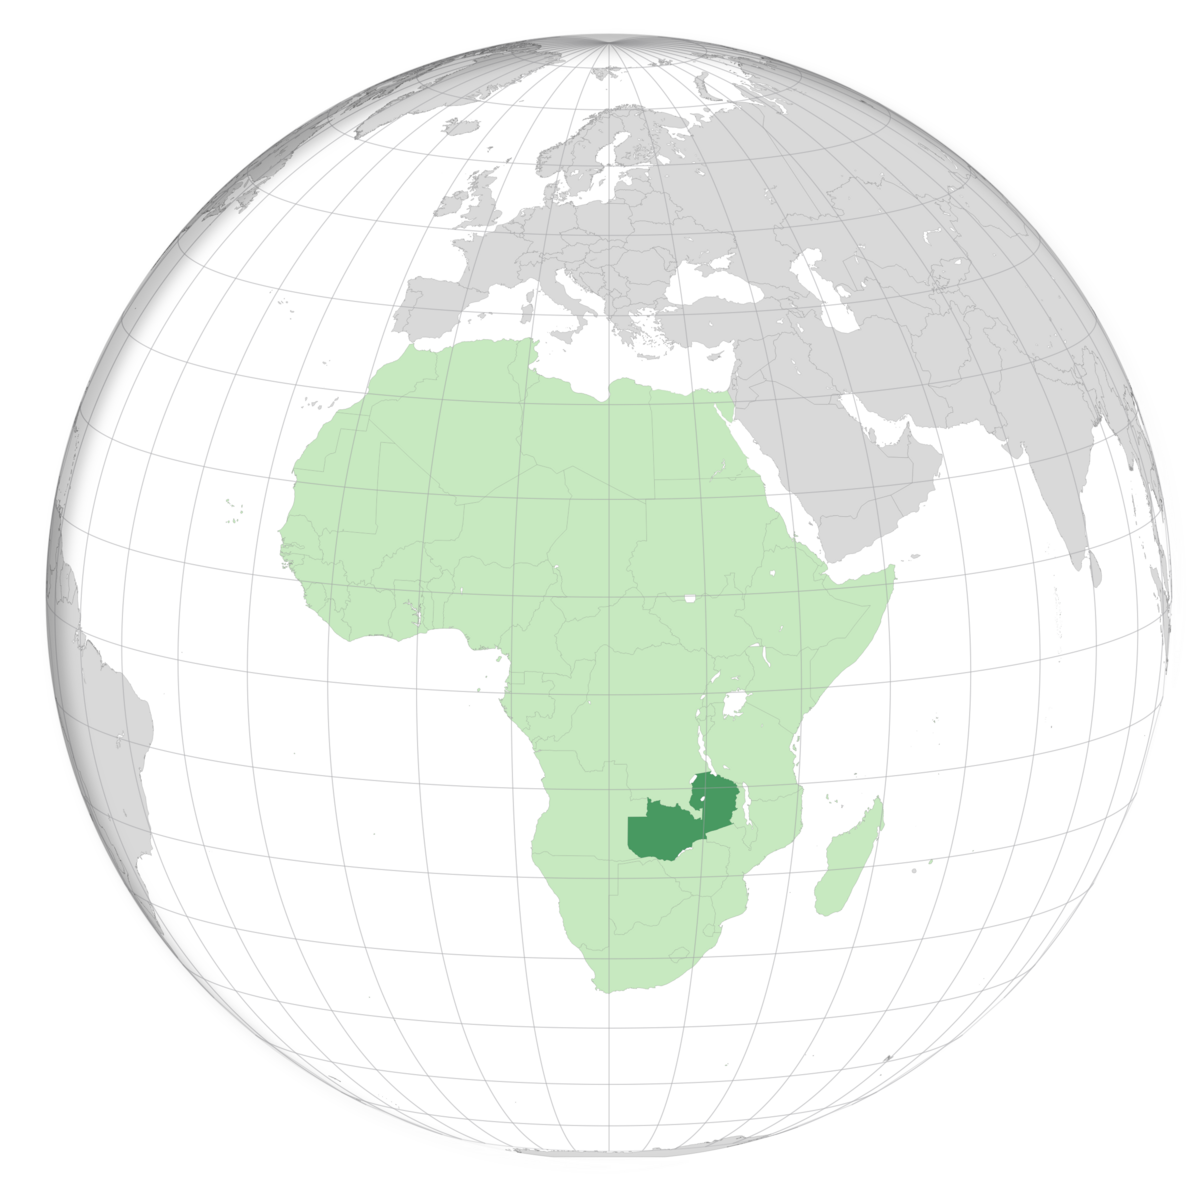 plassering av Zambia på jordkloden. Kart